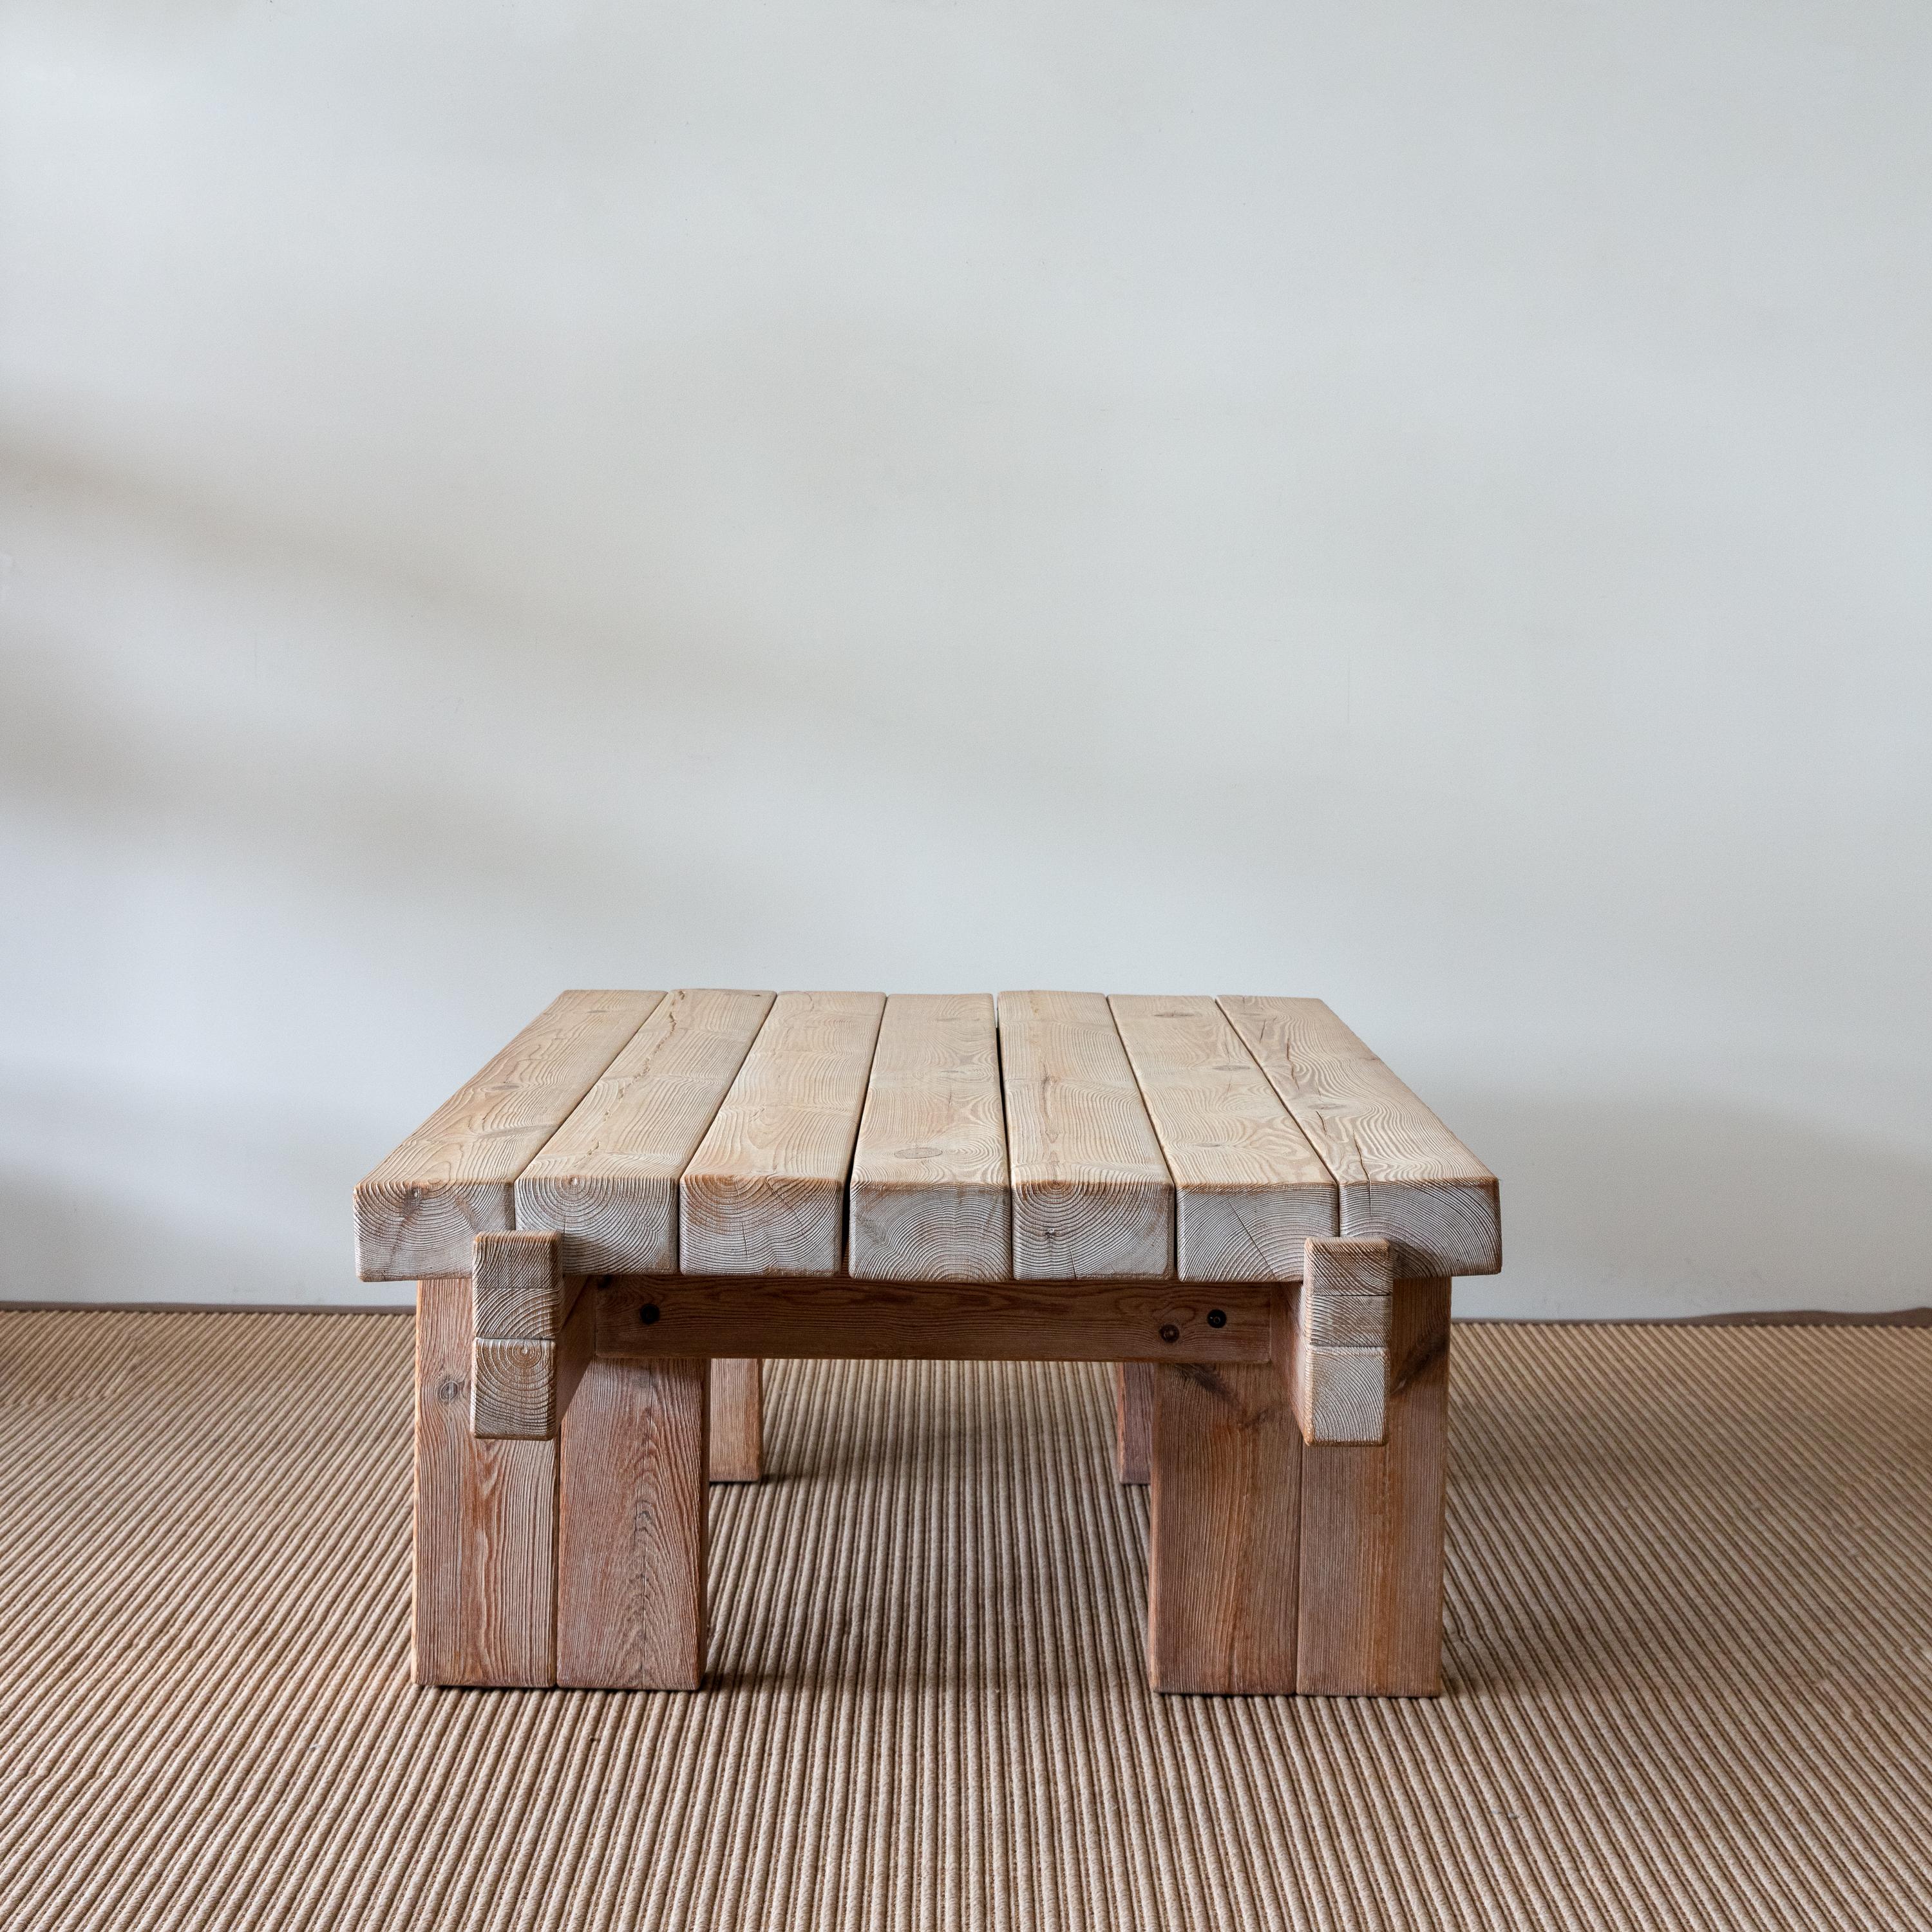  Magnifique table basse en pin massif de couleur claire avec grain et menuiserie apparents.